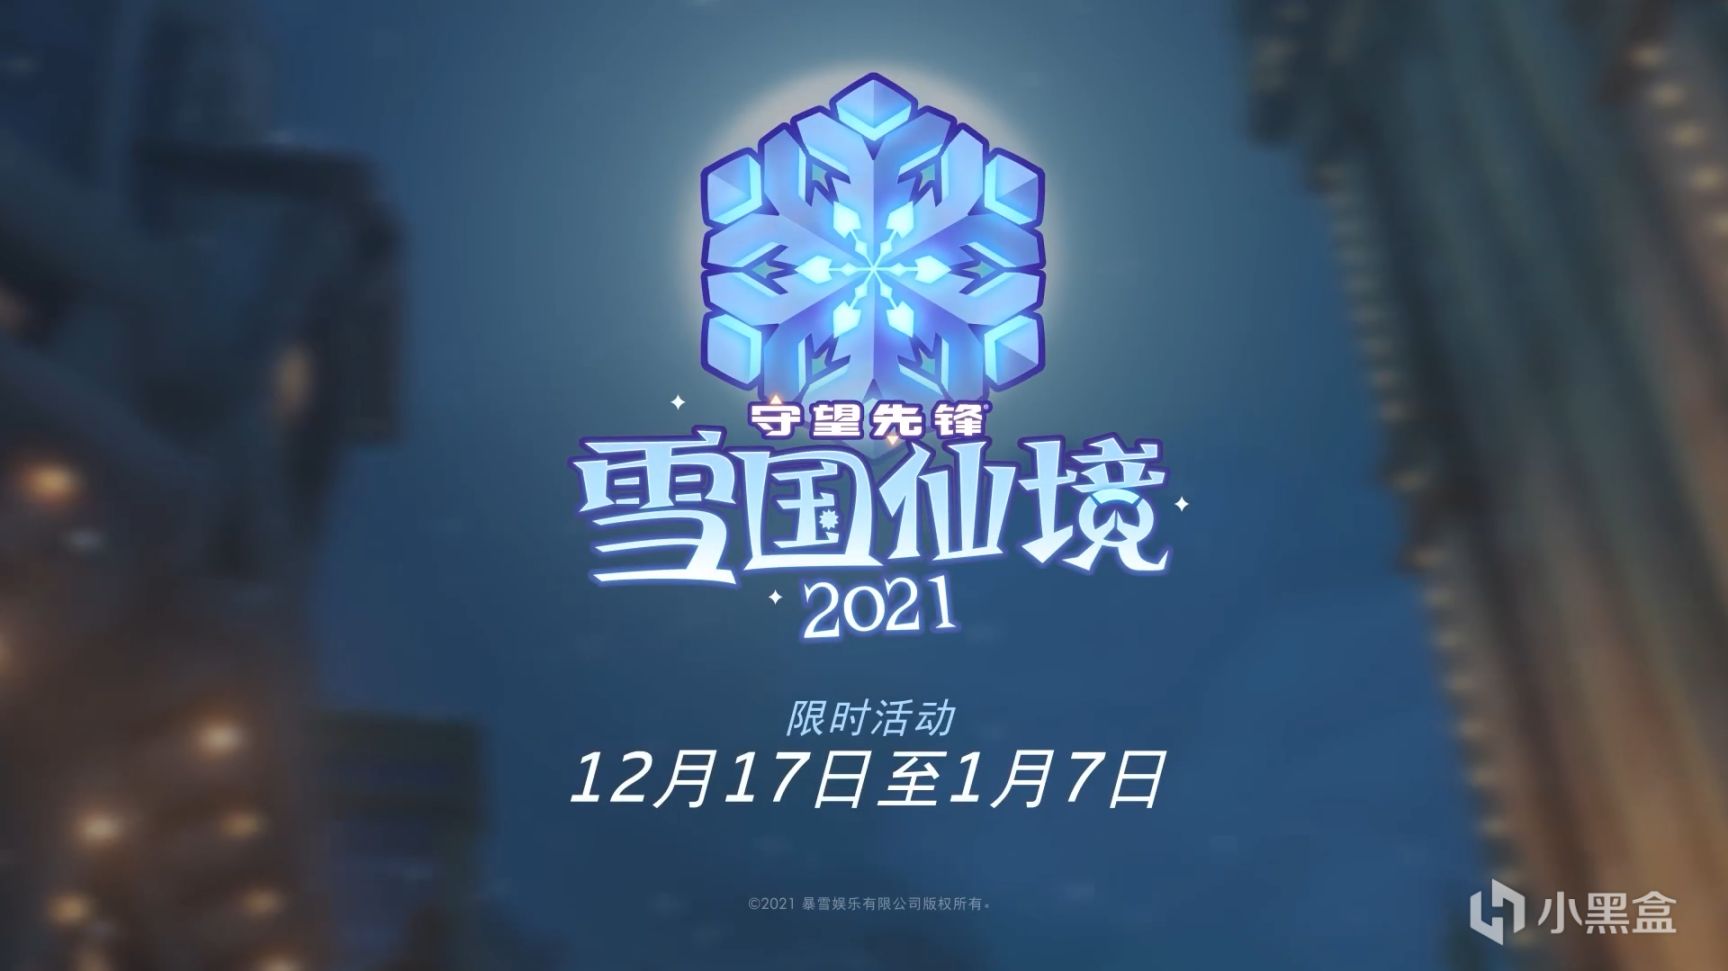 《守望先锋》2021雪国仙境将于12月17日开启